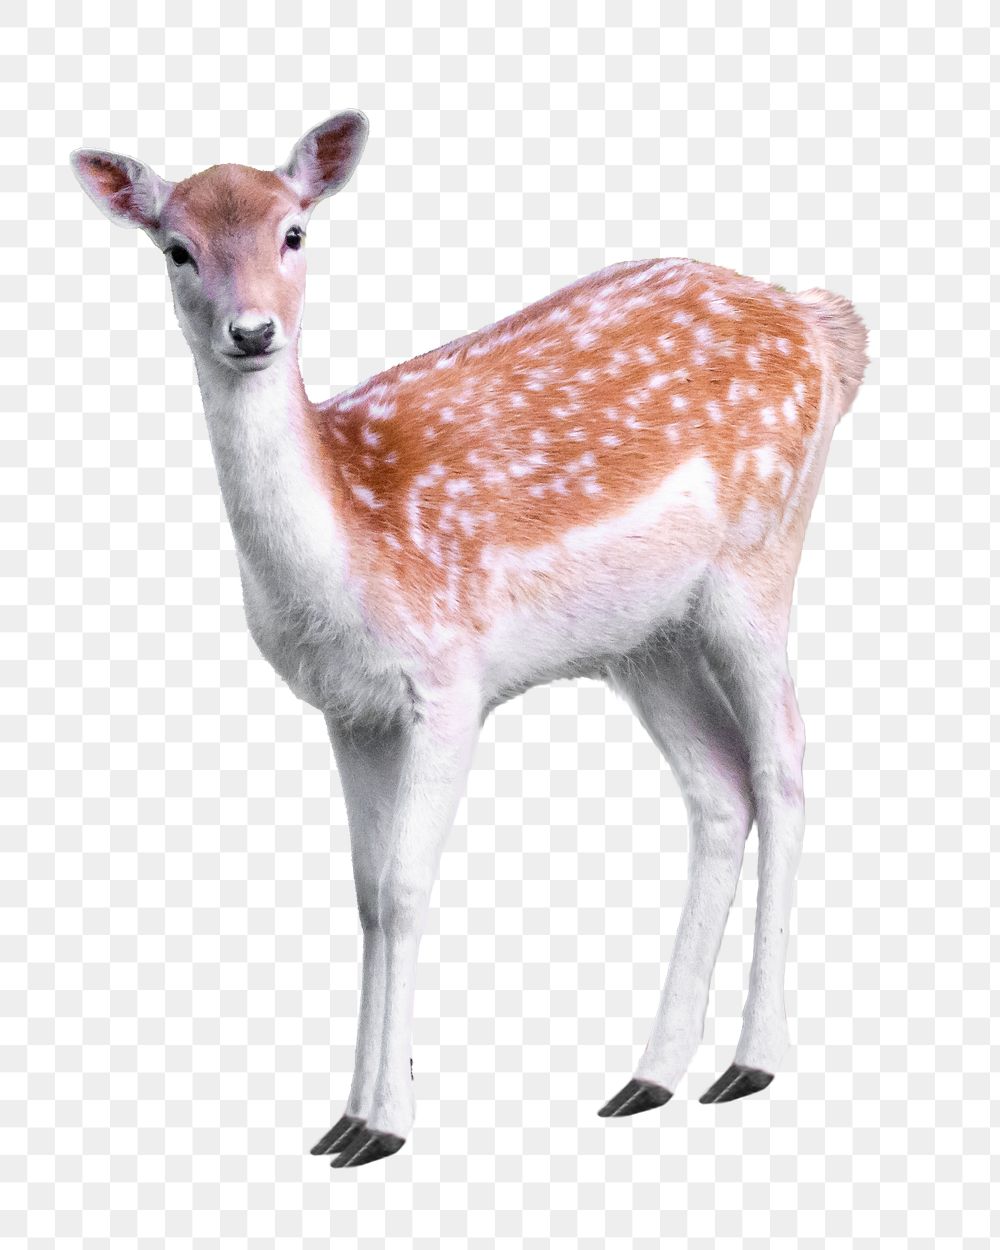 Sika deer png sticker, transparent background